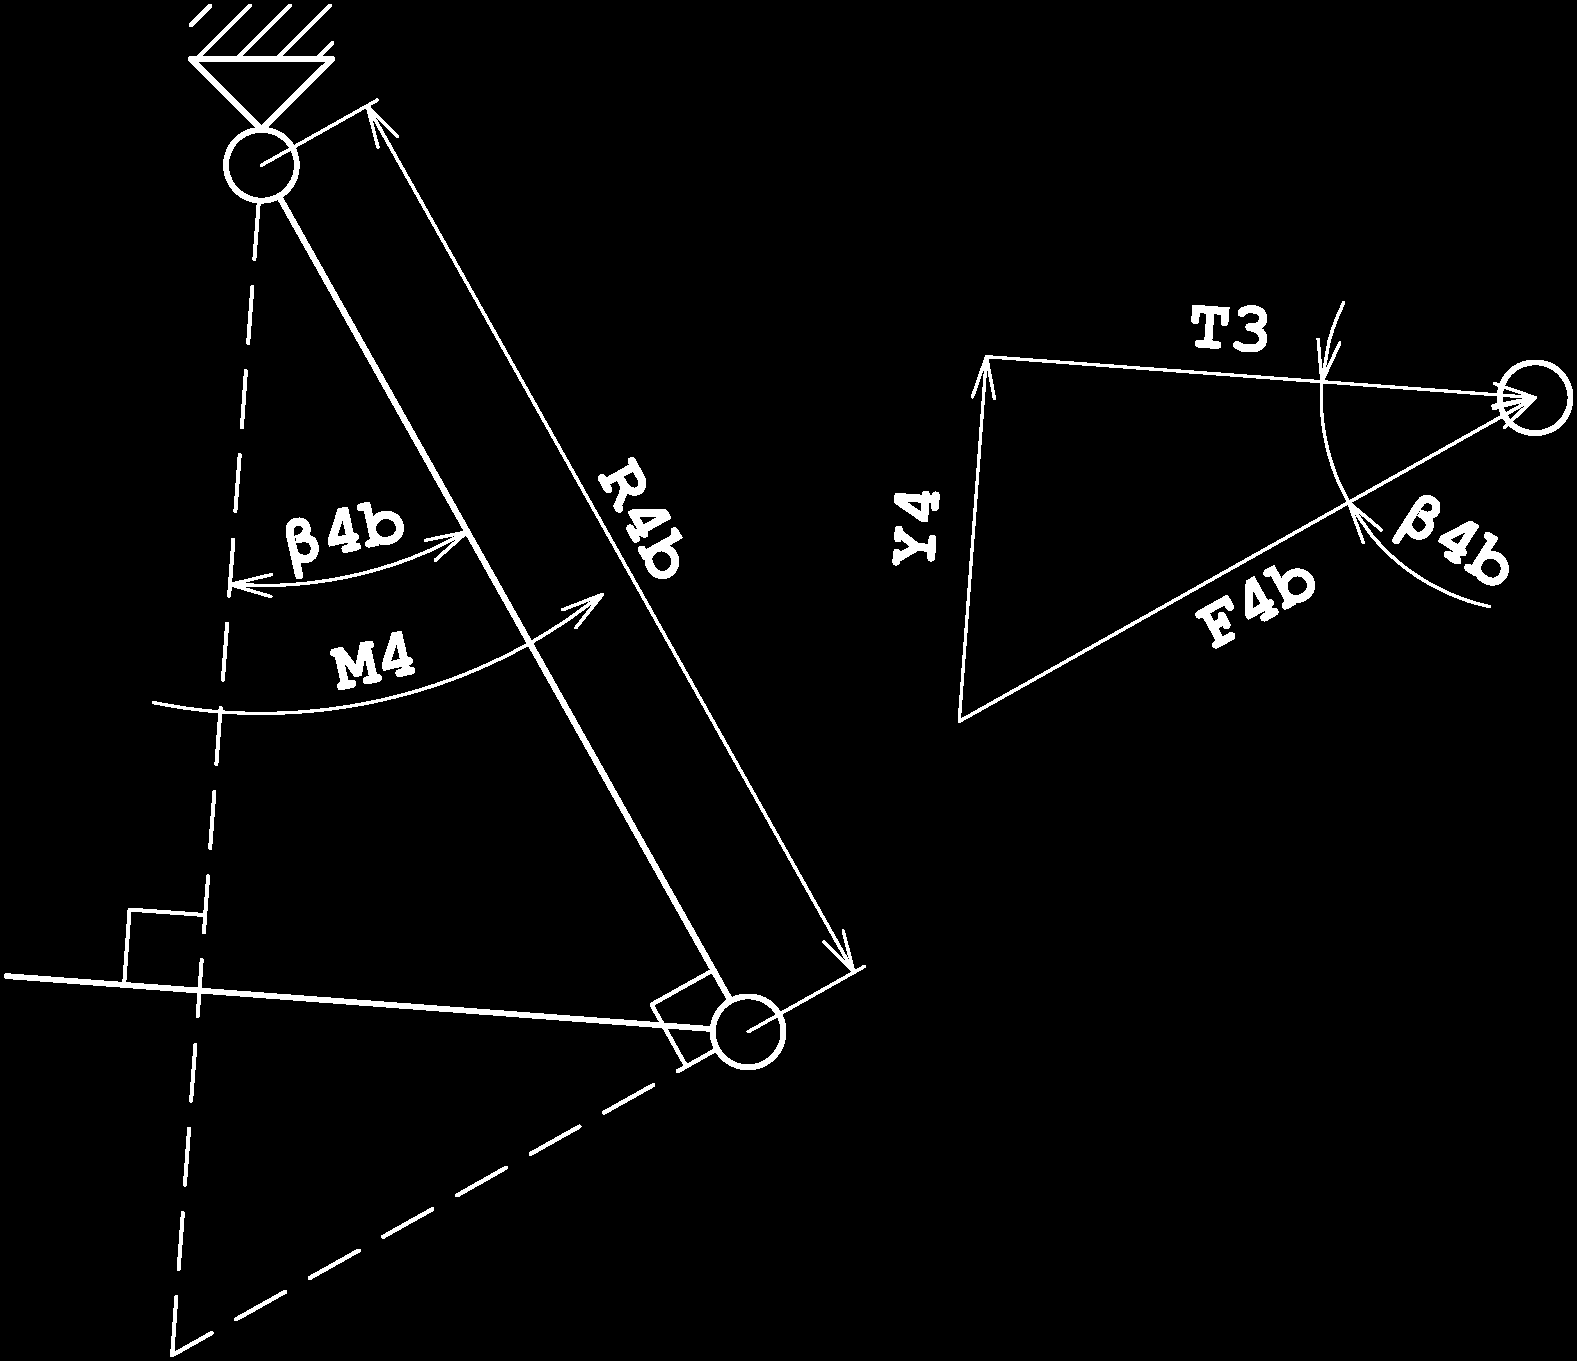 9.1 KINEMATICKÉ VAZBY PŘÍČNÉHO ŘÍZENÍ Páka v křídle mezi táhly 2 a 3 Osa rotace páky byla zvolena tak, aby rovina rotace byla přibližně v polovině úhlu tvořeného krajními polohami